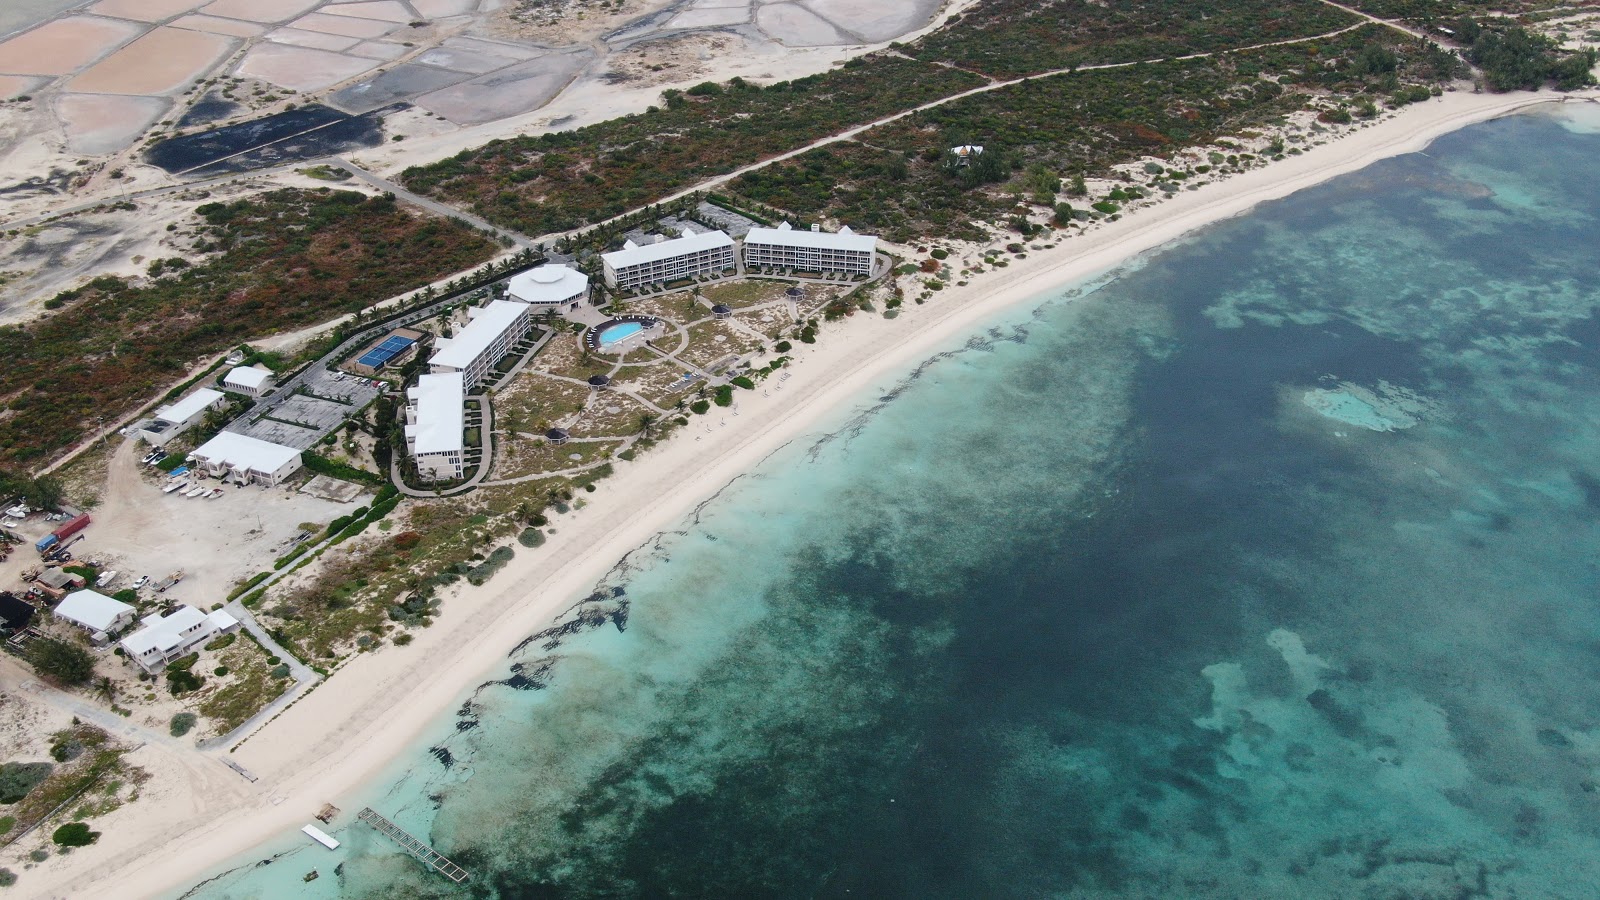 Zdjęcie East Bay Caicos z przestronna zatoka